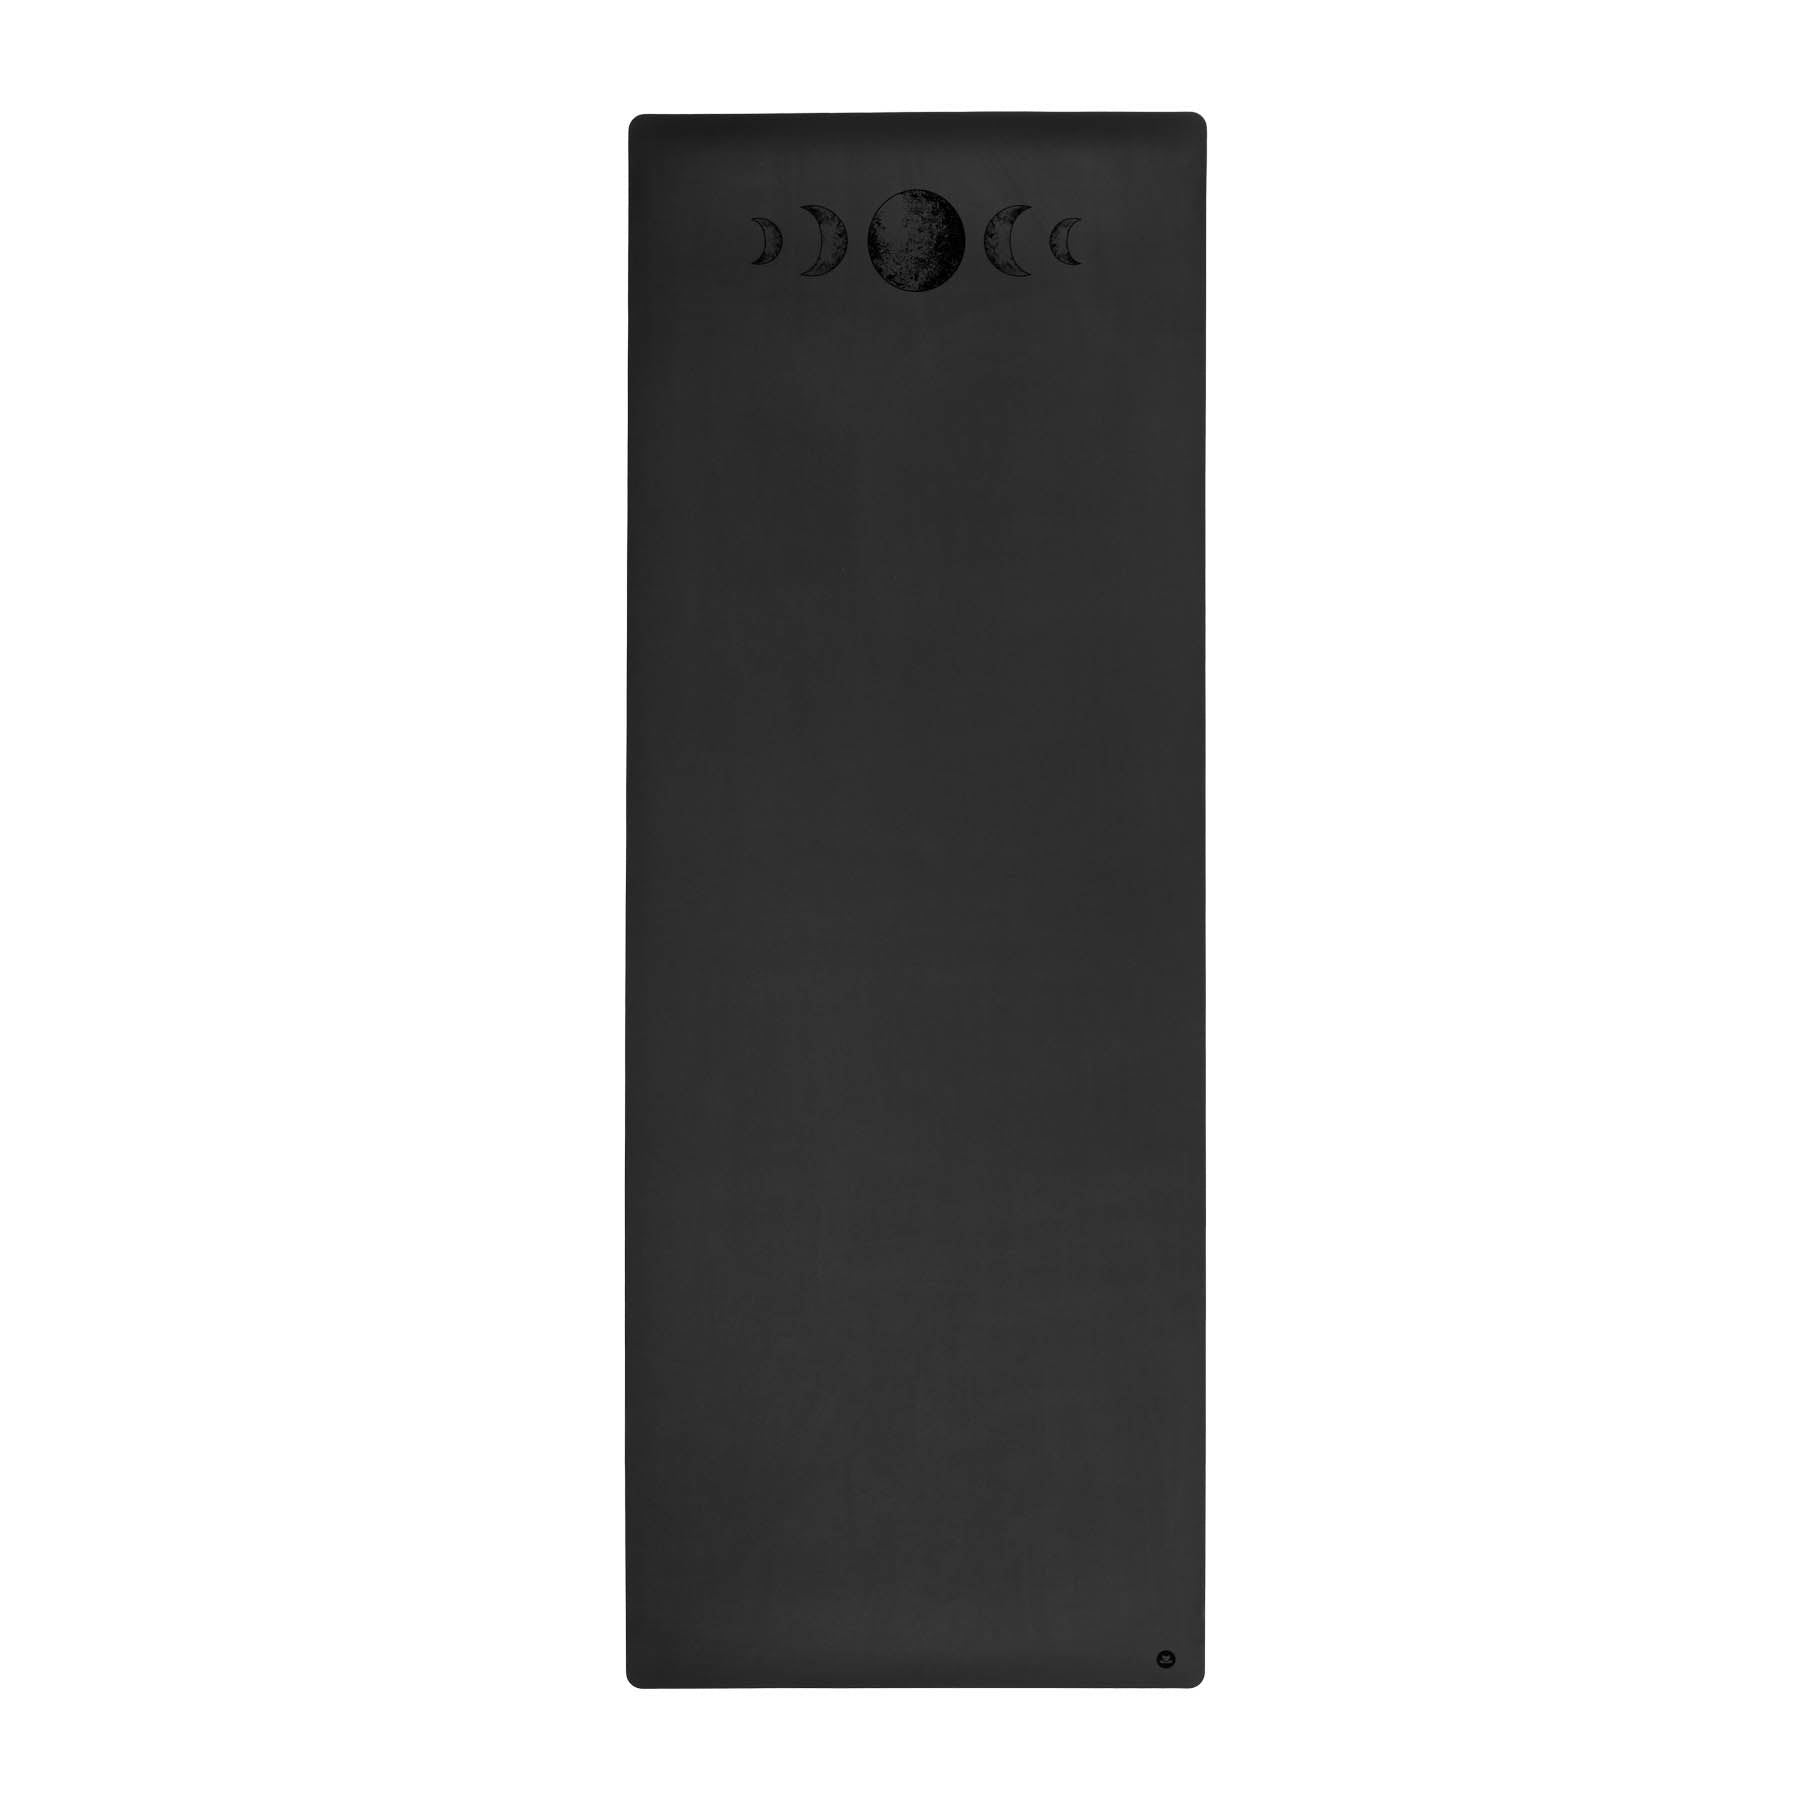 Tapis de yoga SuperGrip très antidérapant en caoutchouc naturel durable de couleur noire